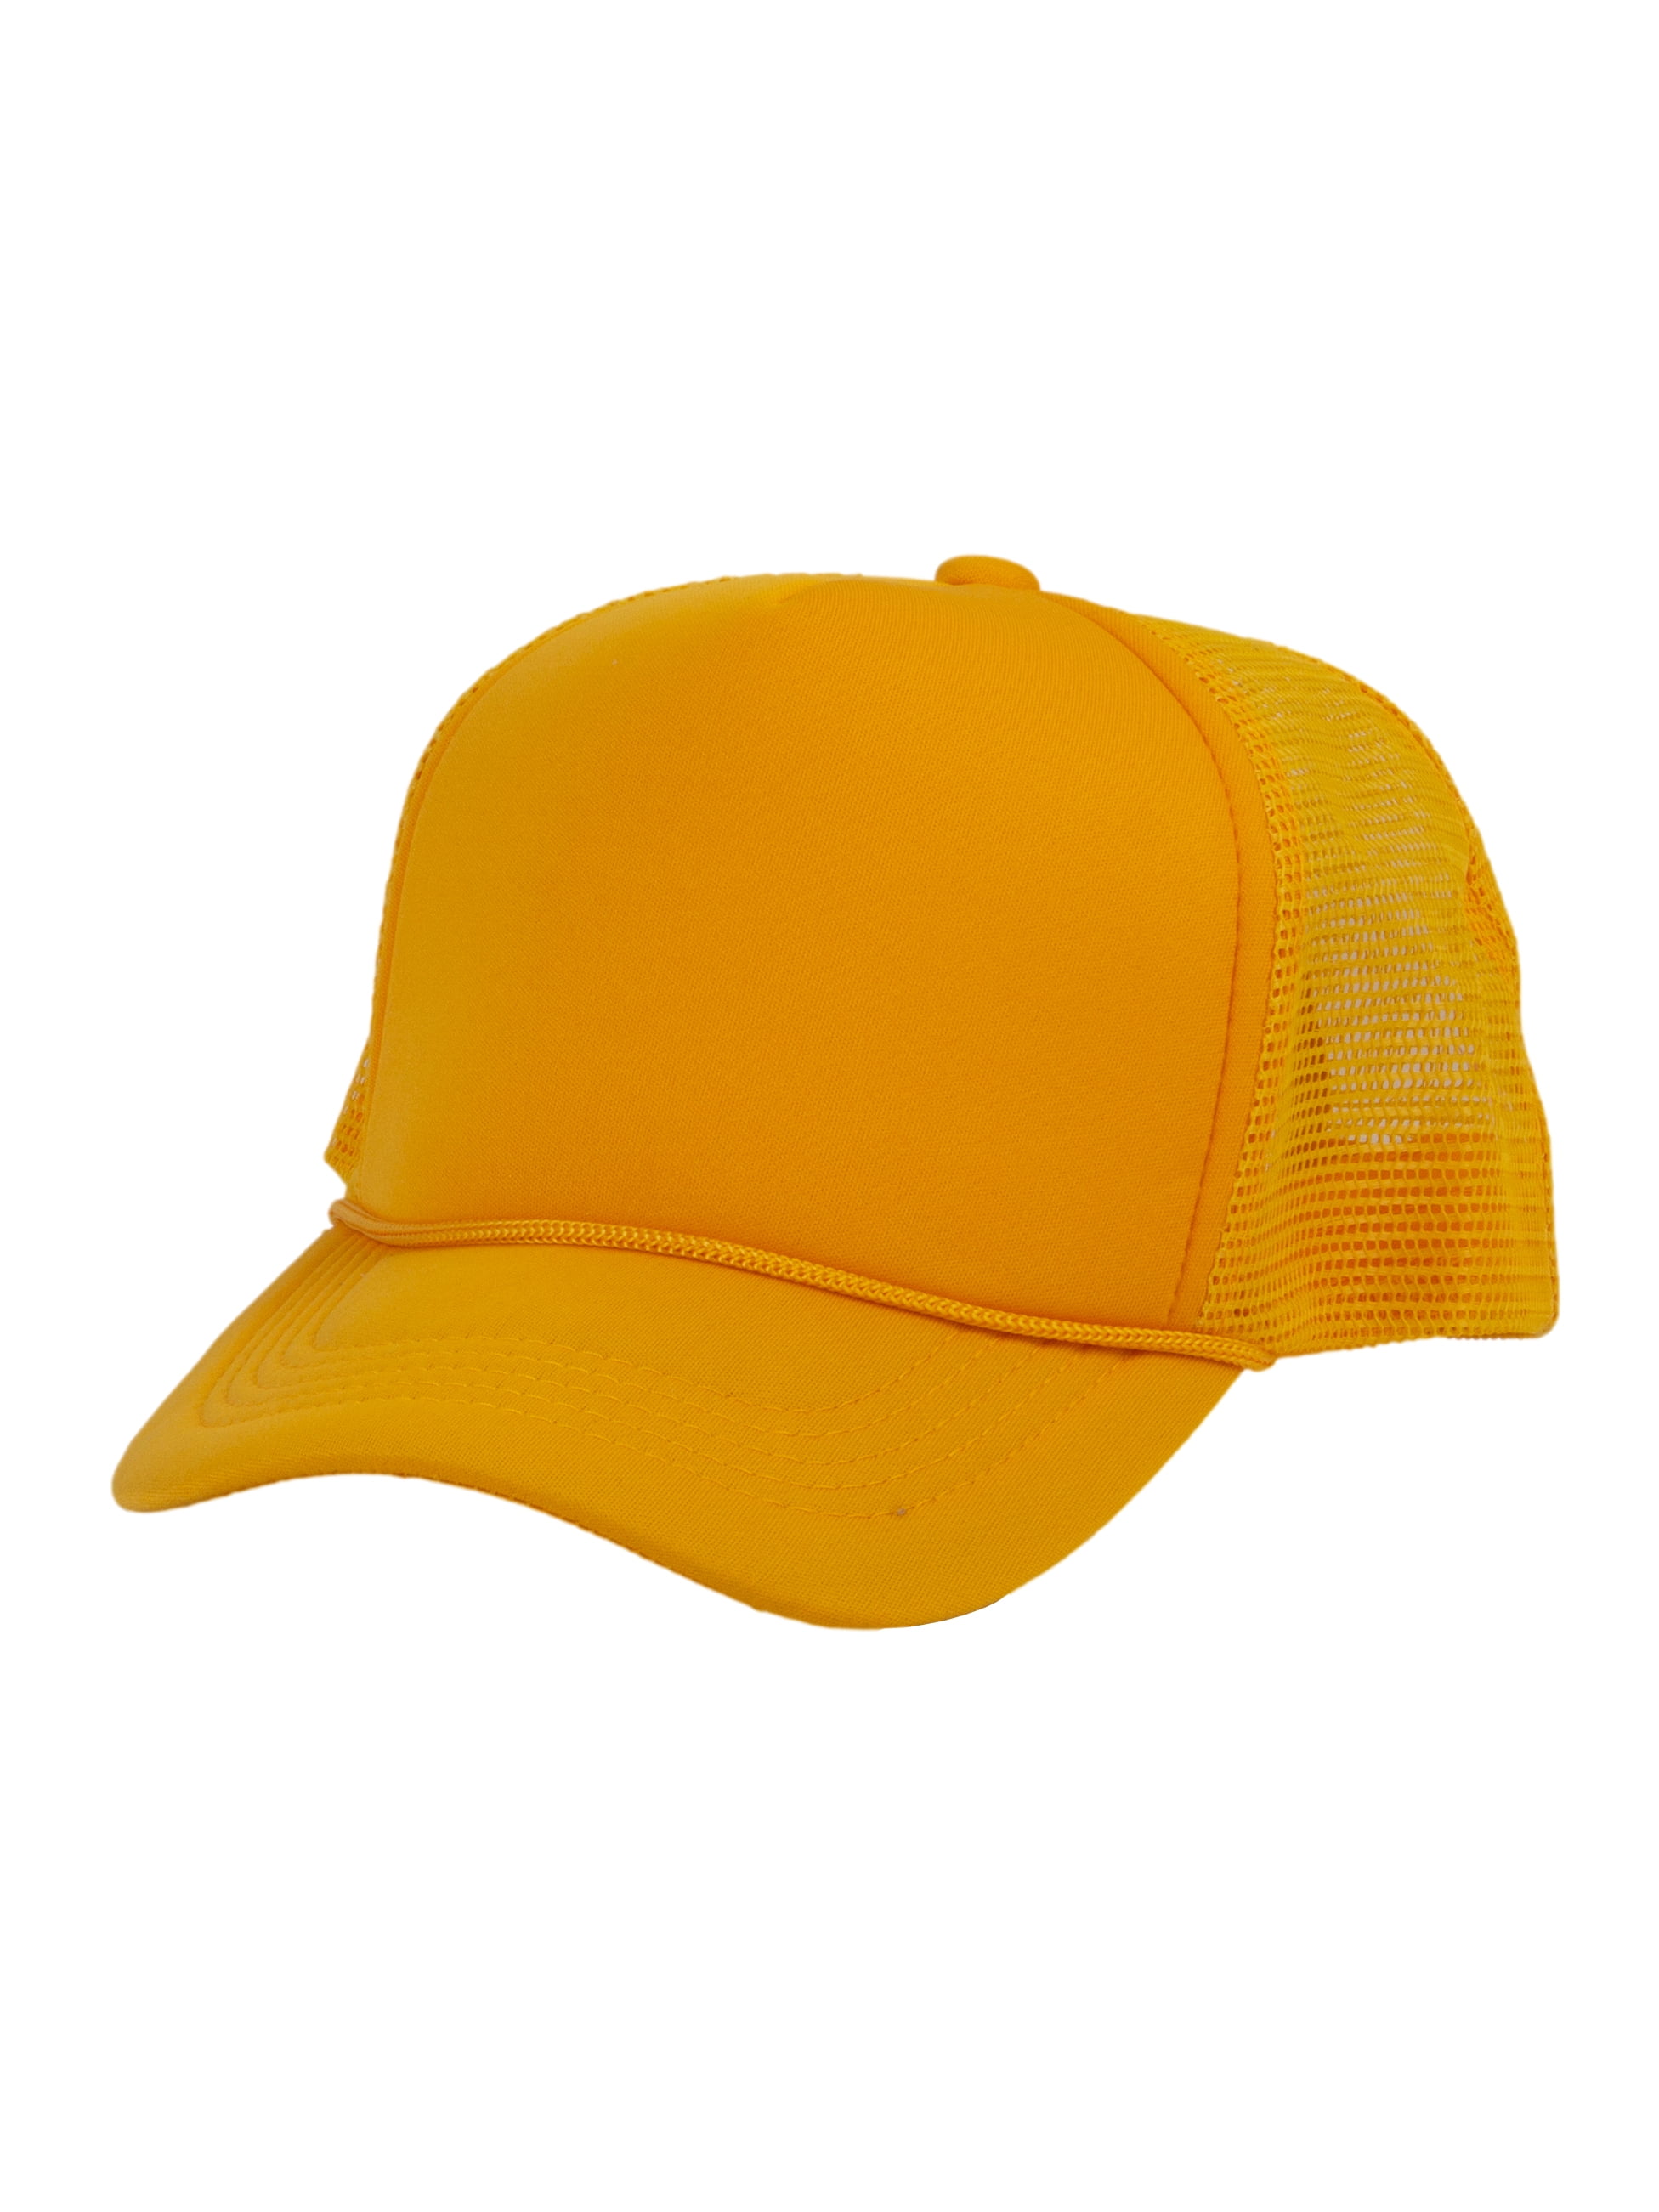 Top Headwear Blank Trucker Hat - Mens Trucker Hats Foam Mesh Snapback Gold  